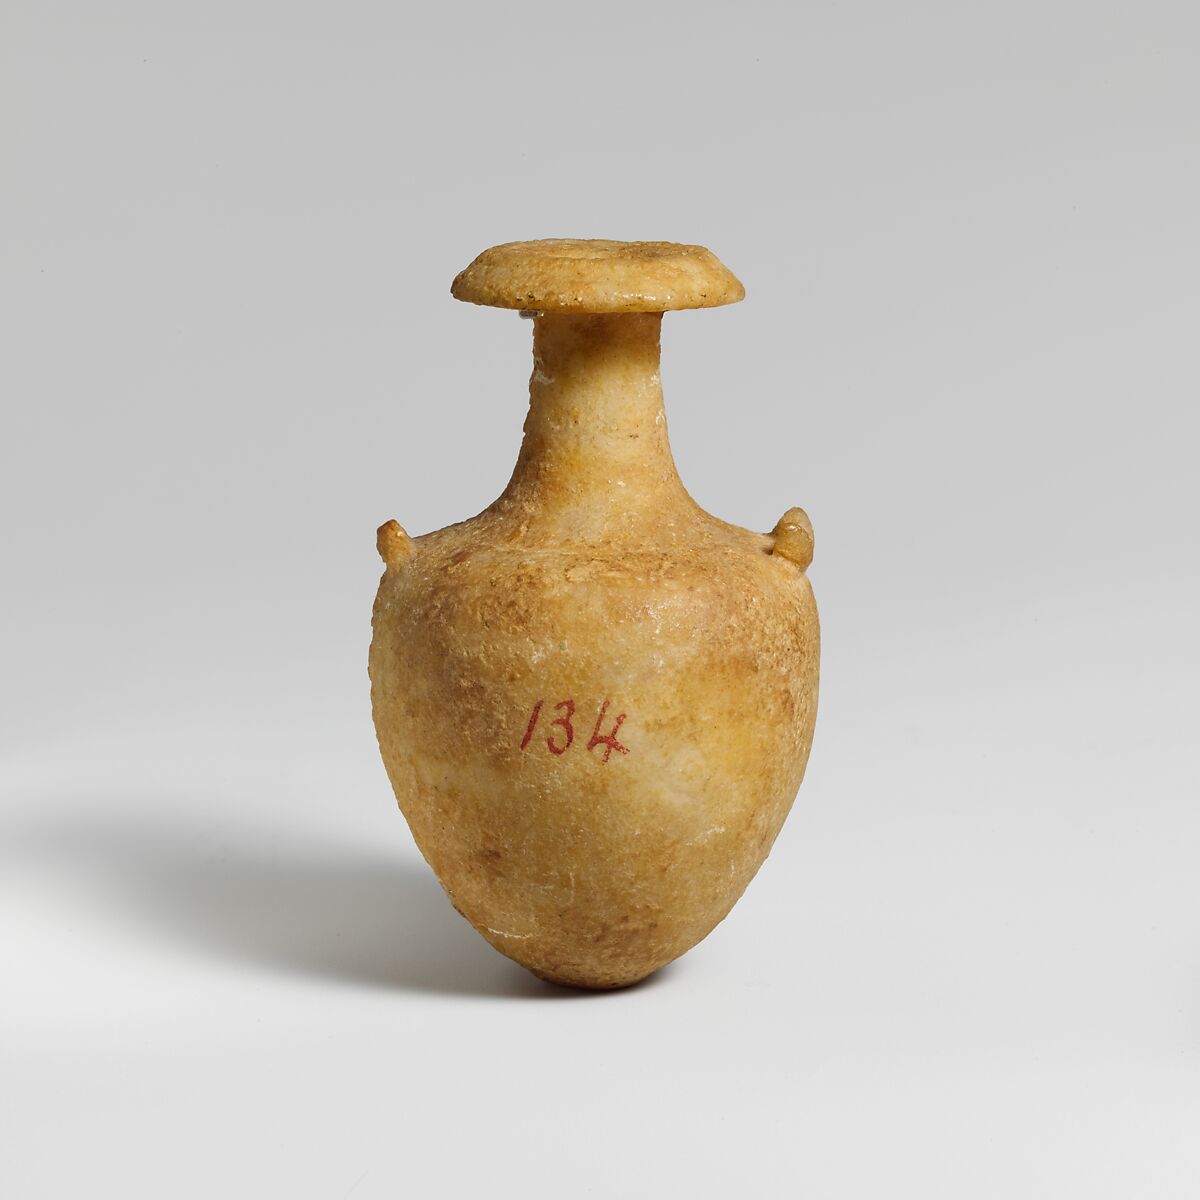 Miniature alabaster amphora (jar), Gypsum (alabaster), Cypriot 